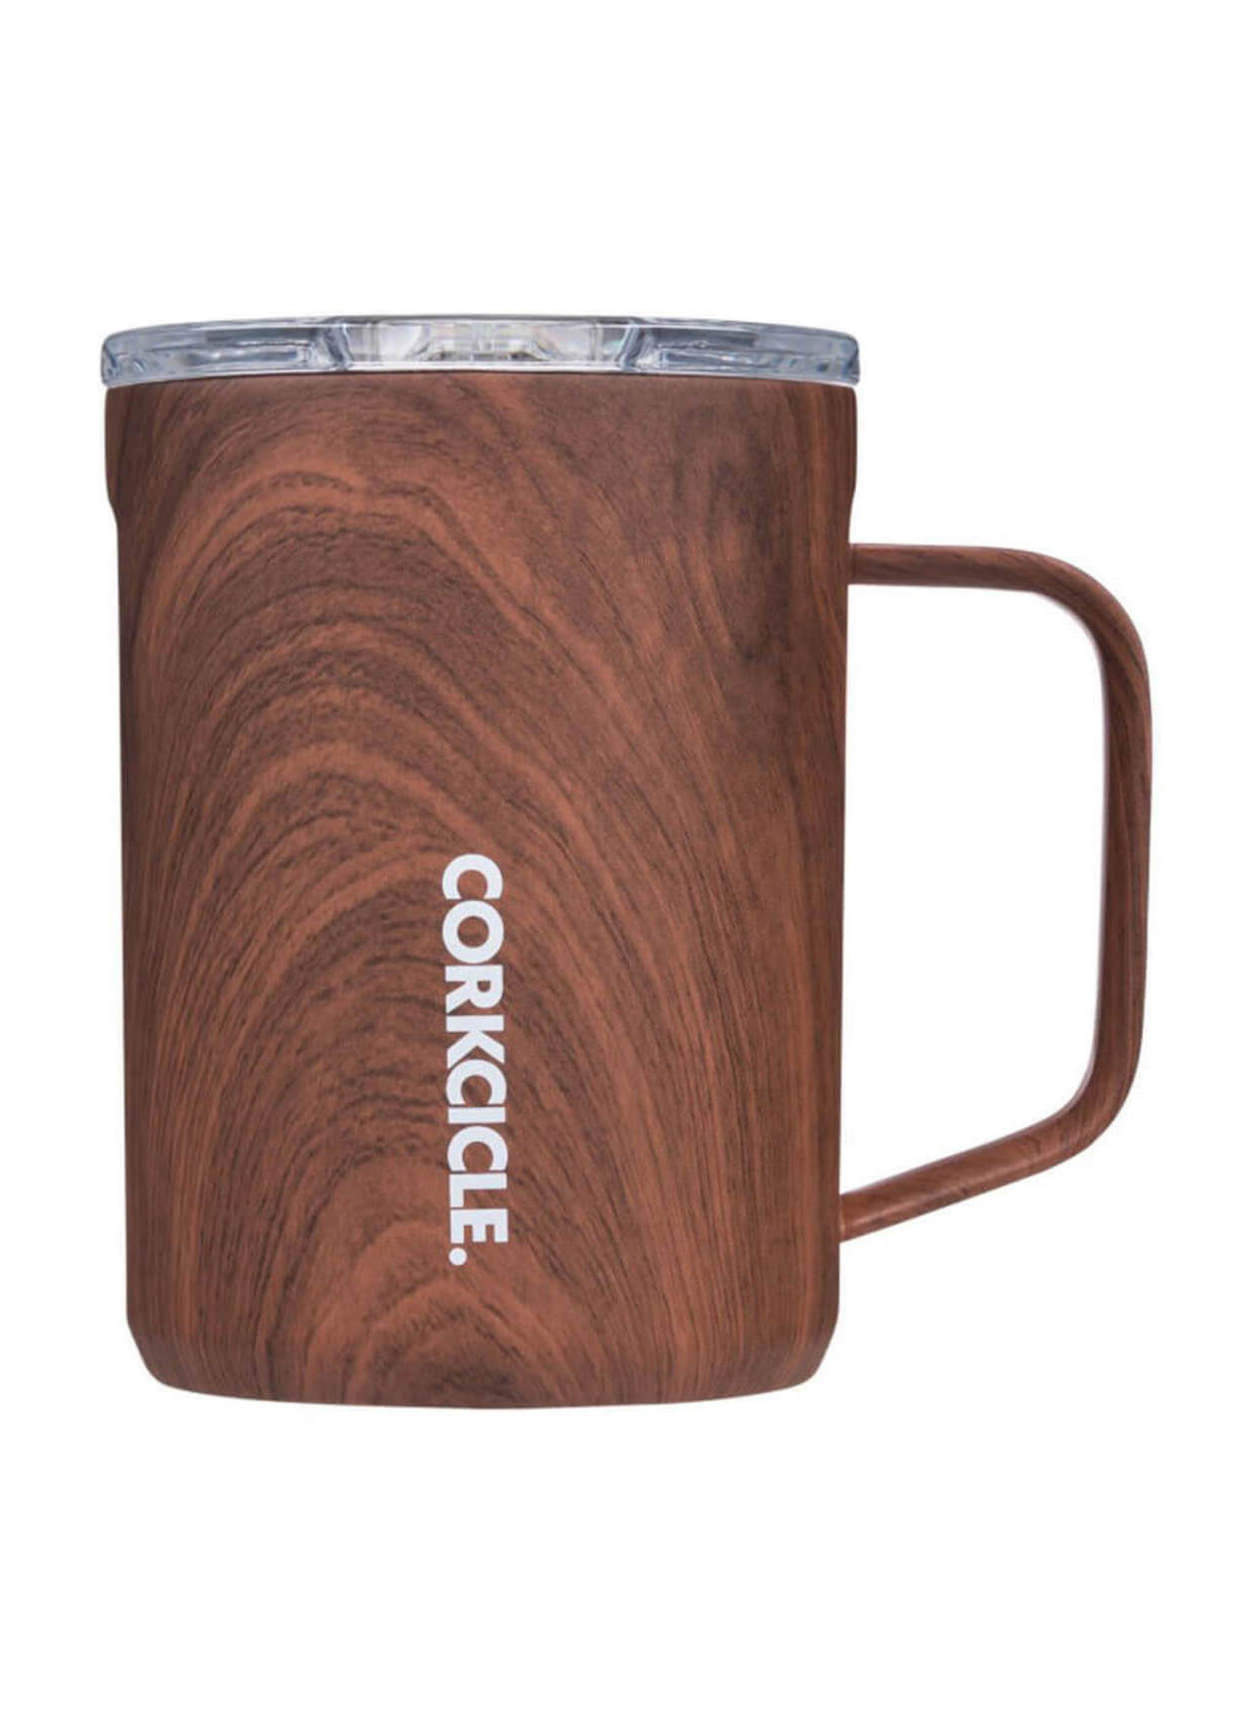 16 oz. Gloss White Corkcicle Coffee Mug